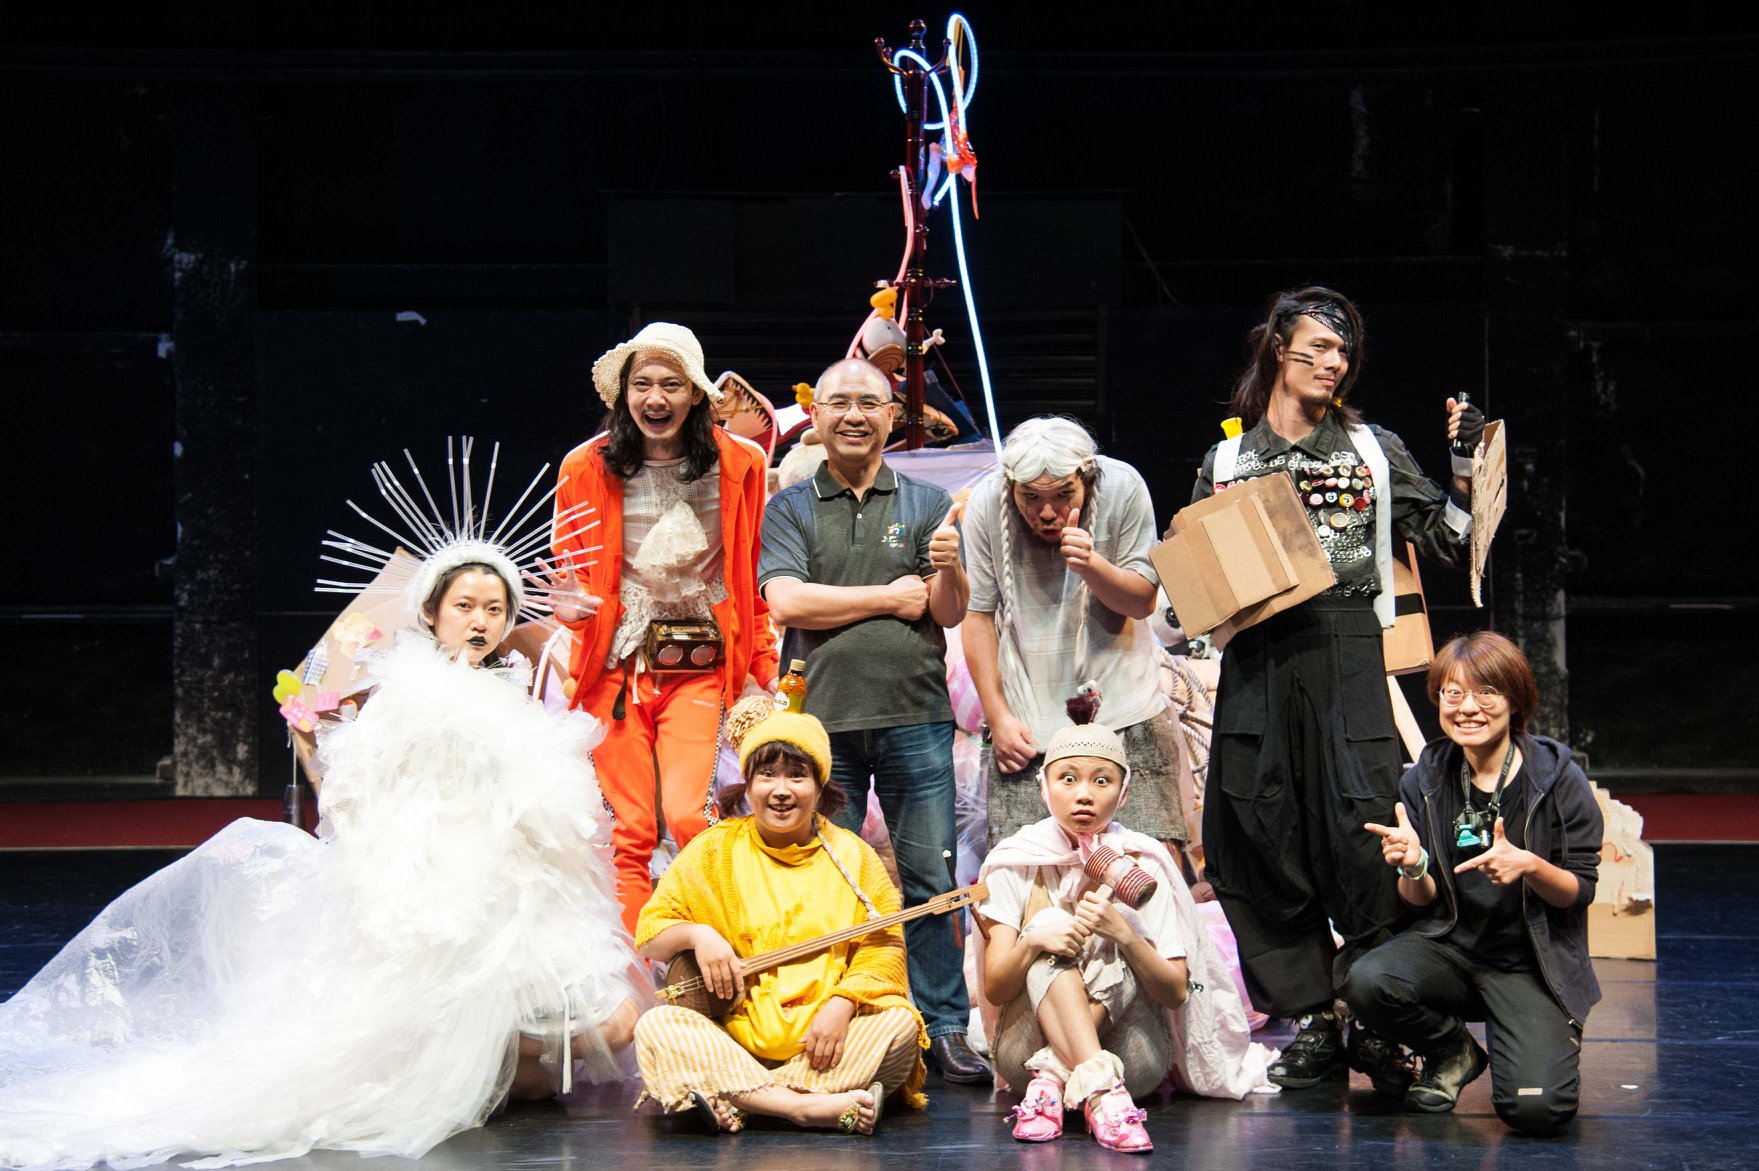 回收紙蛋盒造景、用二手床單縫戲服——台灣劇團打造一場場零廢棄表演